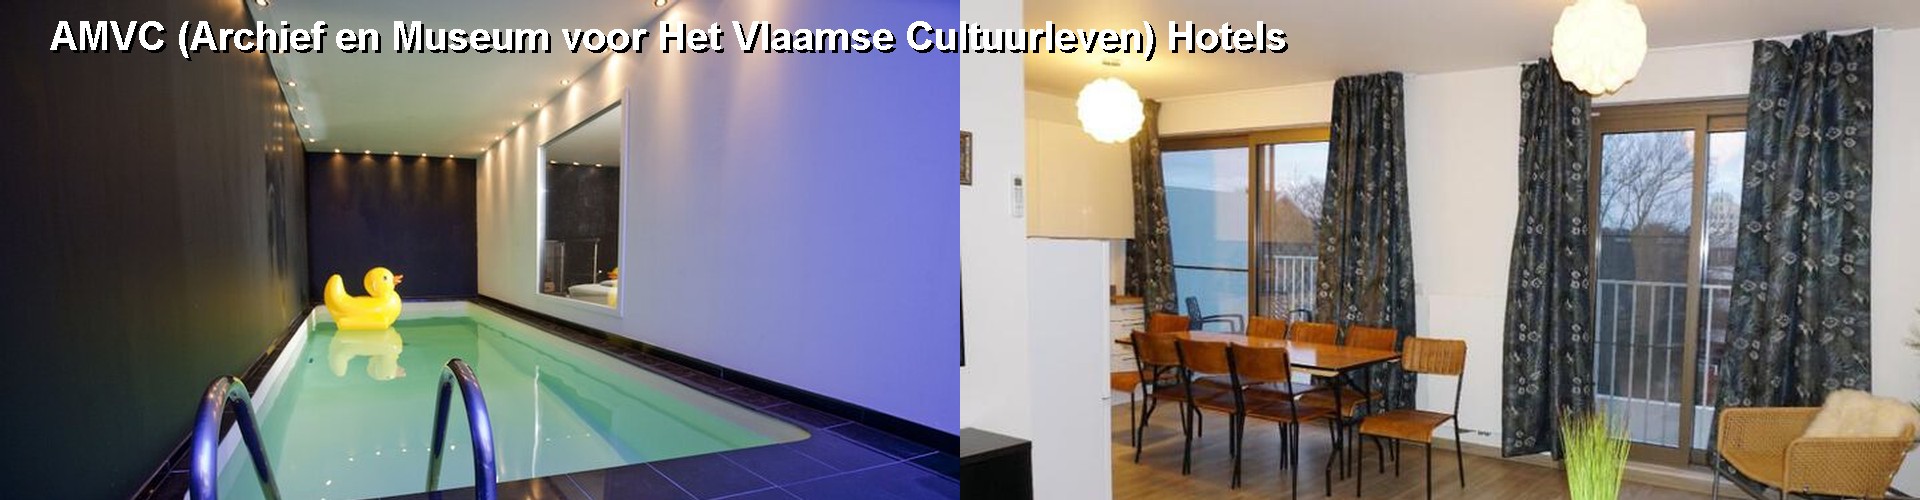 5 Best Hotels near AMVC (Archief en Museum voor Het Vlaamse Cultuurleven)